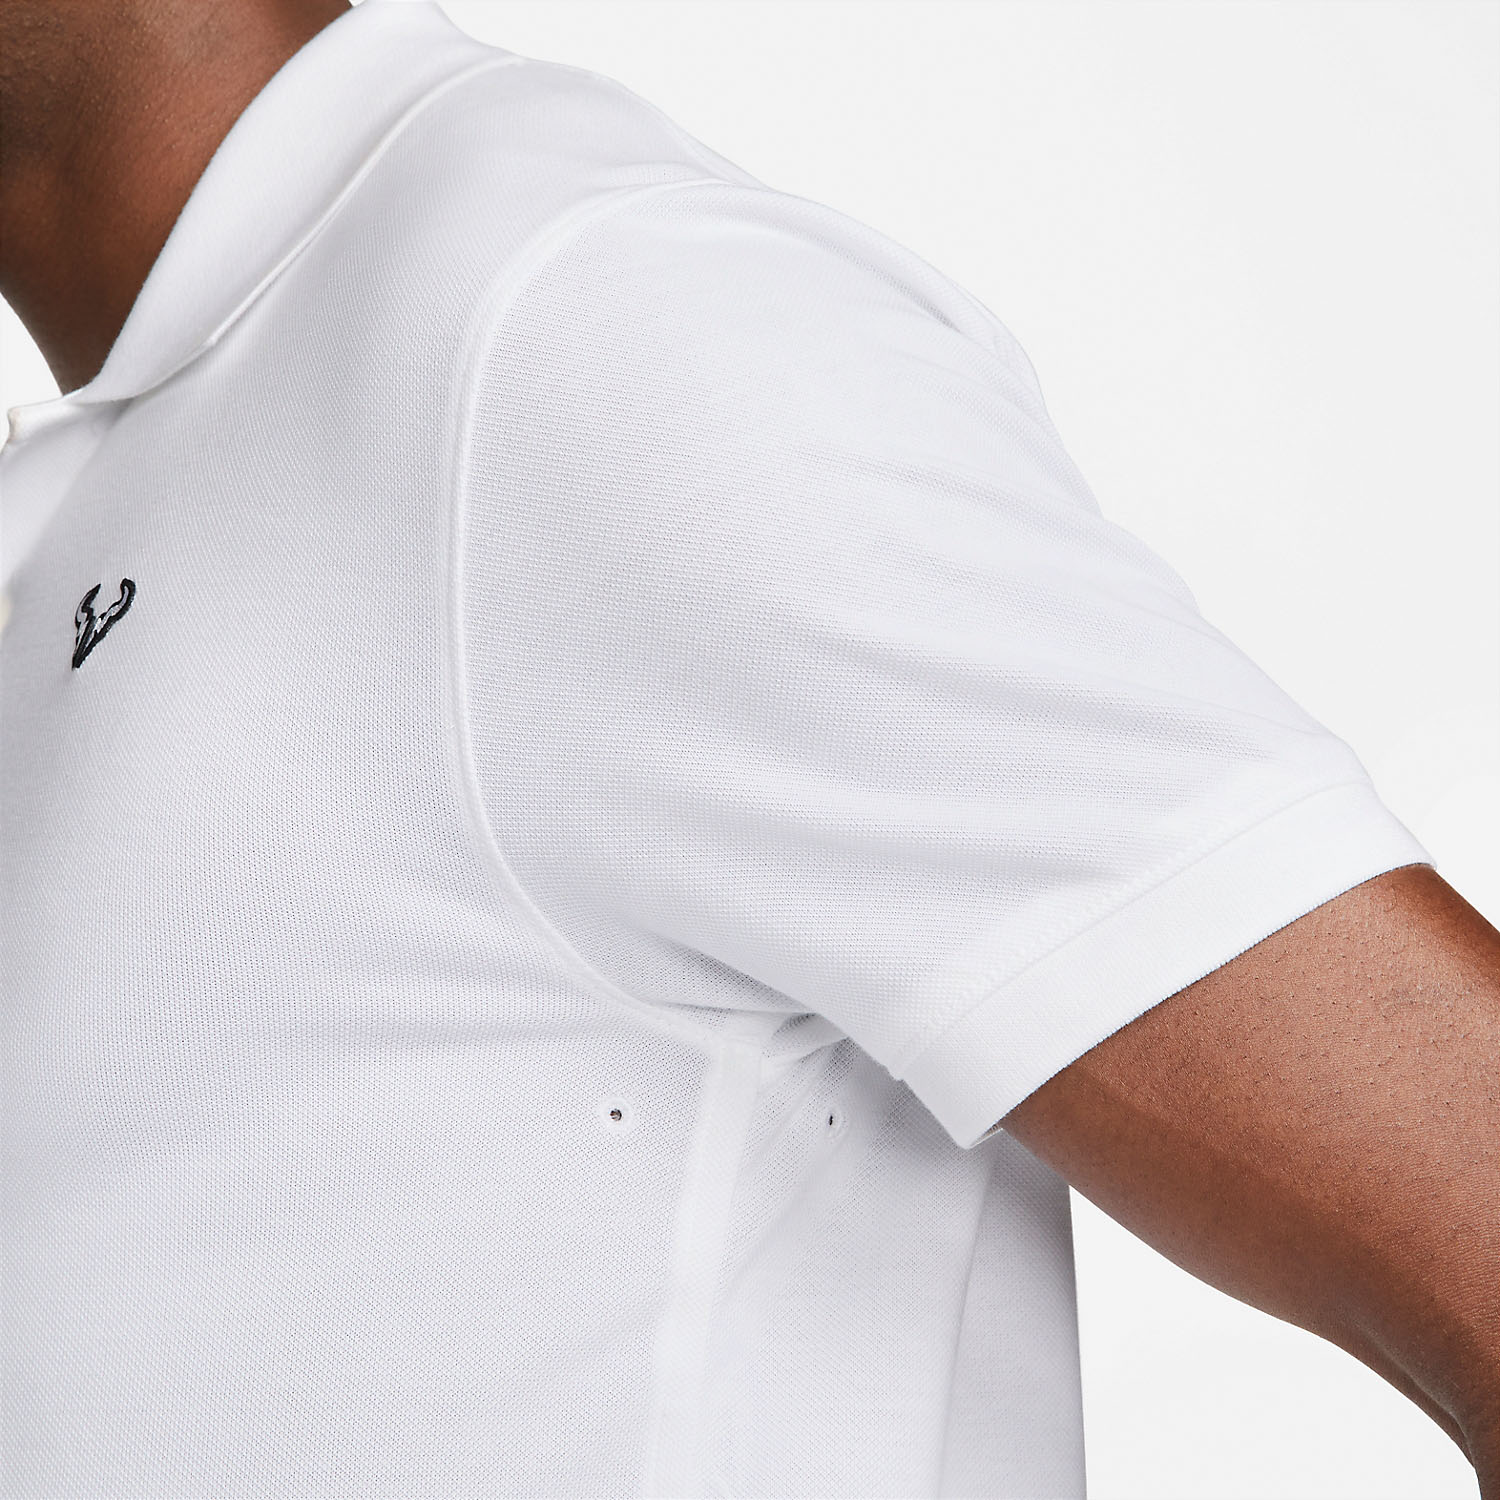 Nike Rafa Logo Men's Tennis Polo - White/Black